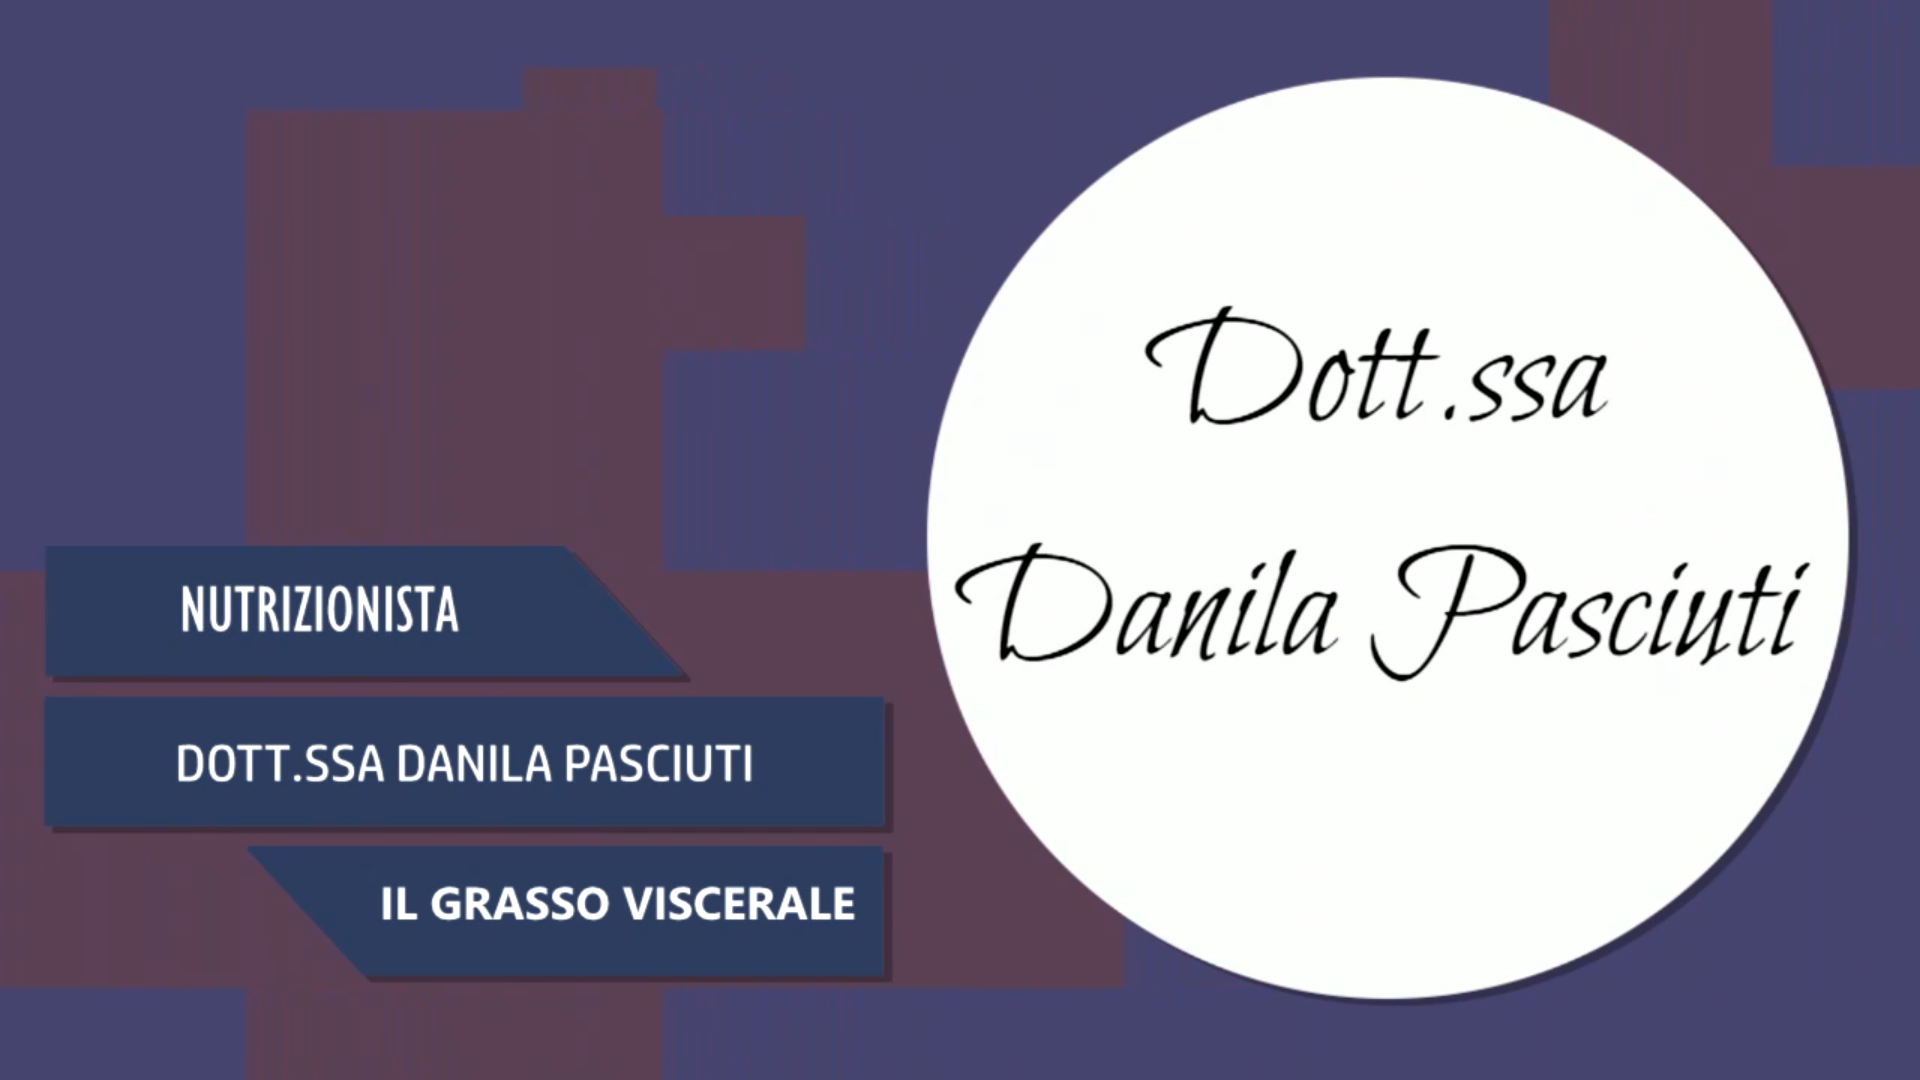 Intervista alla Dott.ssa Danila Pasciuti – Il grasso viscerale